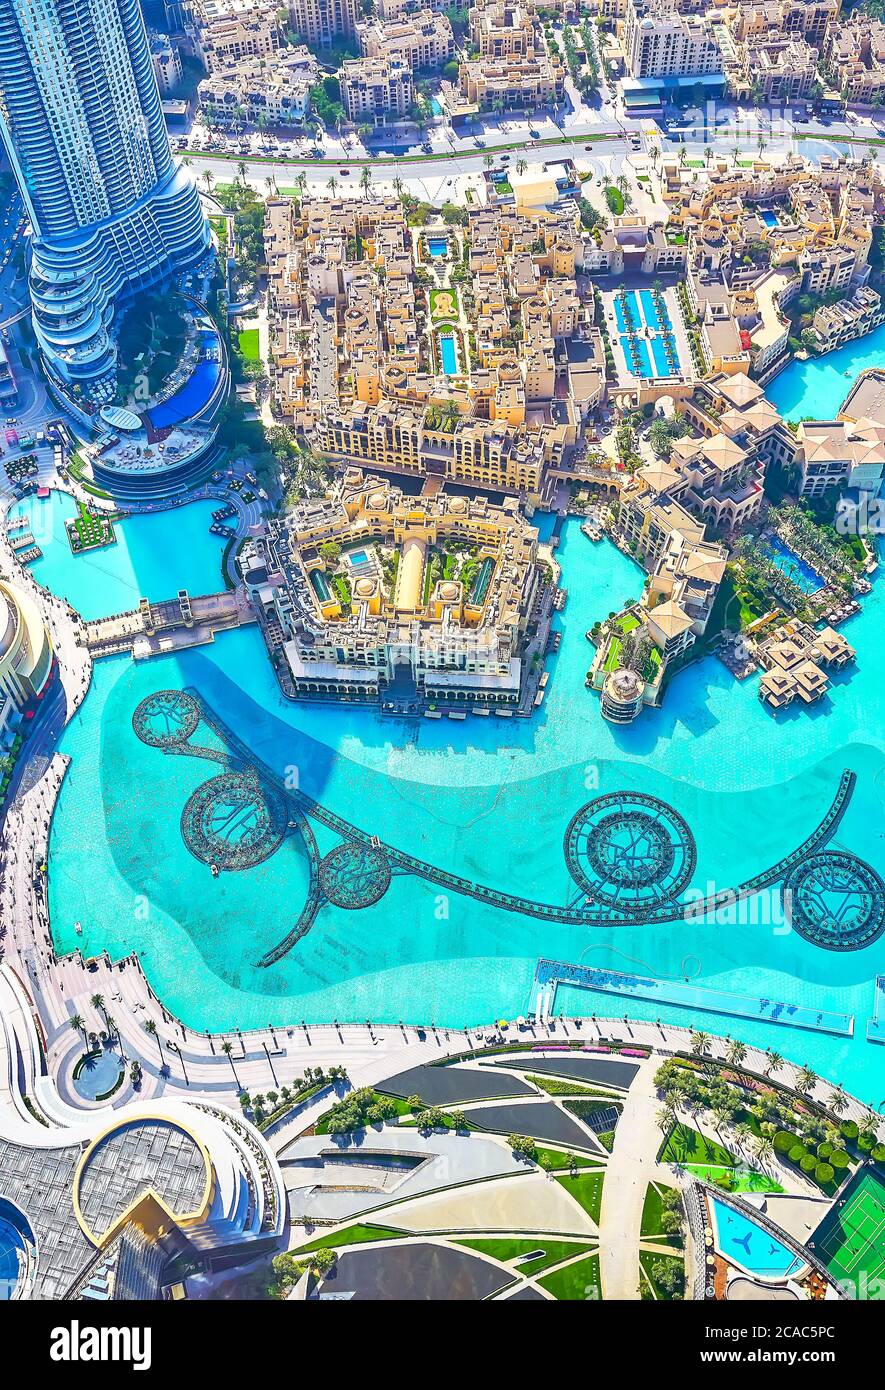 DUBAÏ, Émirats Arabes Unis - 3 MARS 2020 : Burj Khalifa est l'endroit idéal pour regarder le spectacle des fontaines depuis le sommet, le 3 mars à Dubaï Banque D'Images